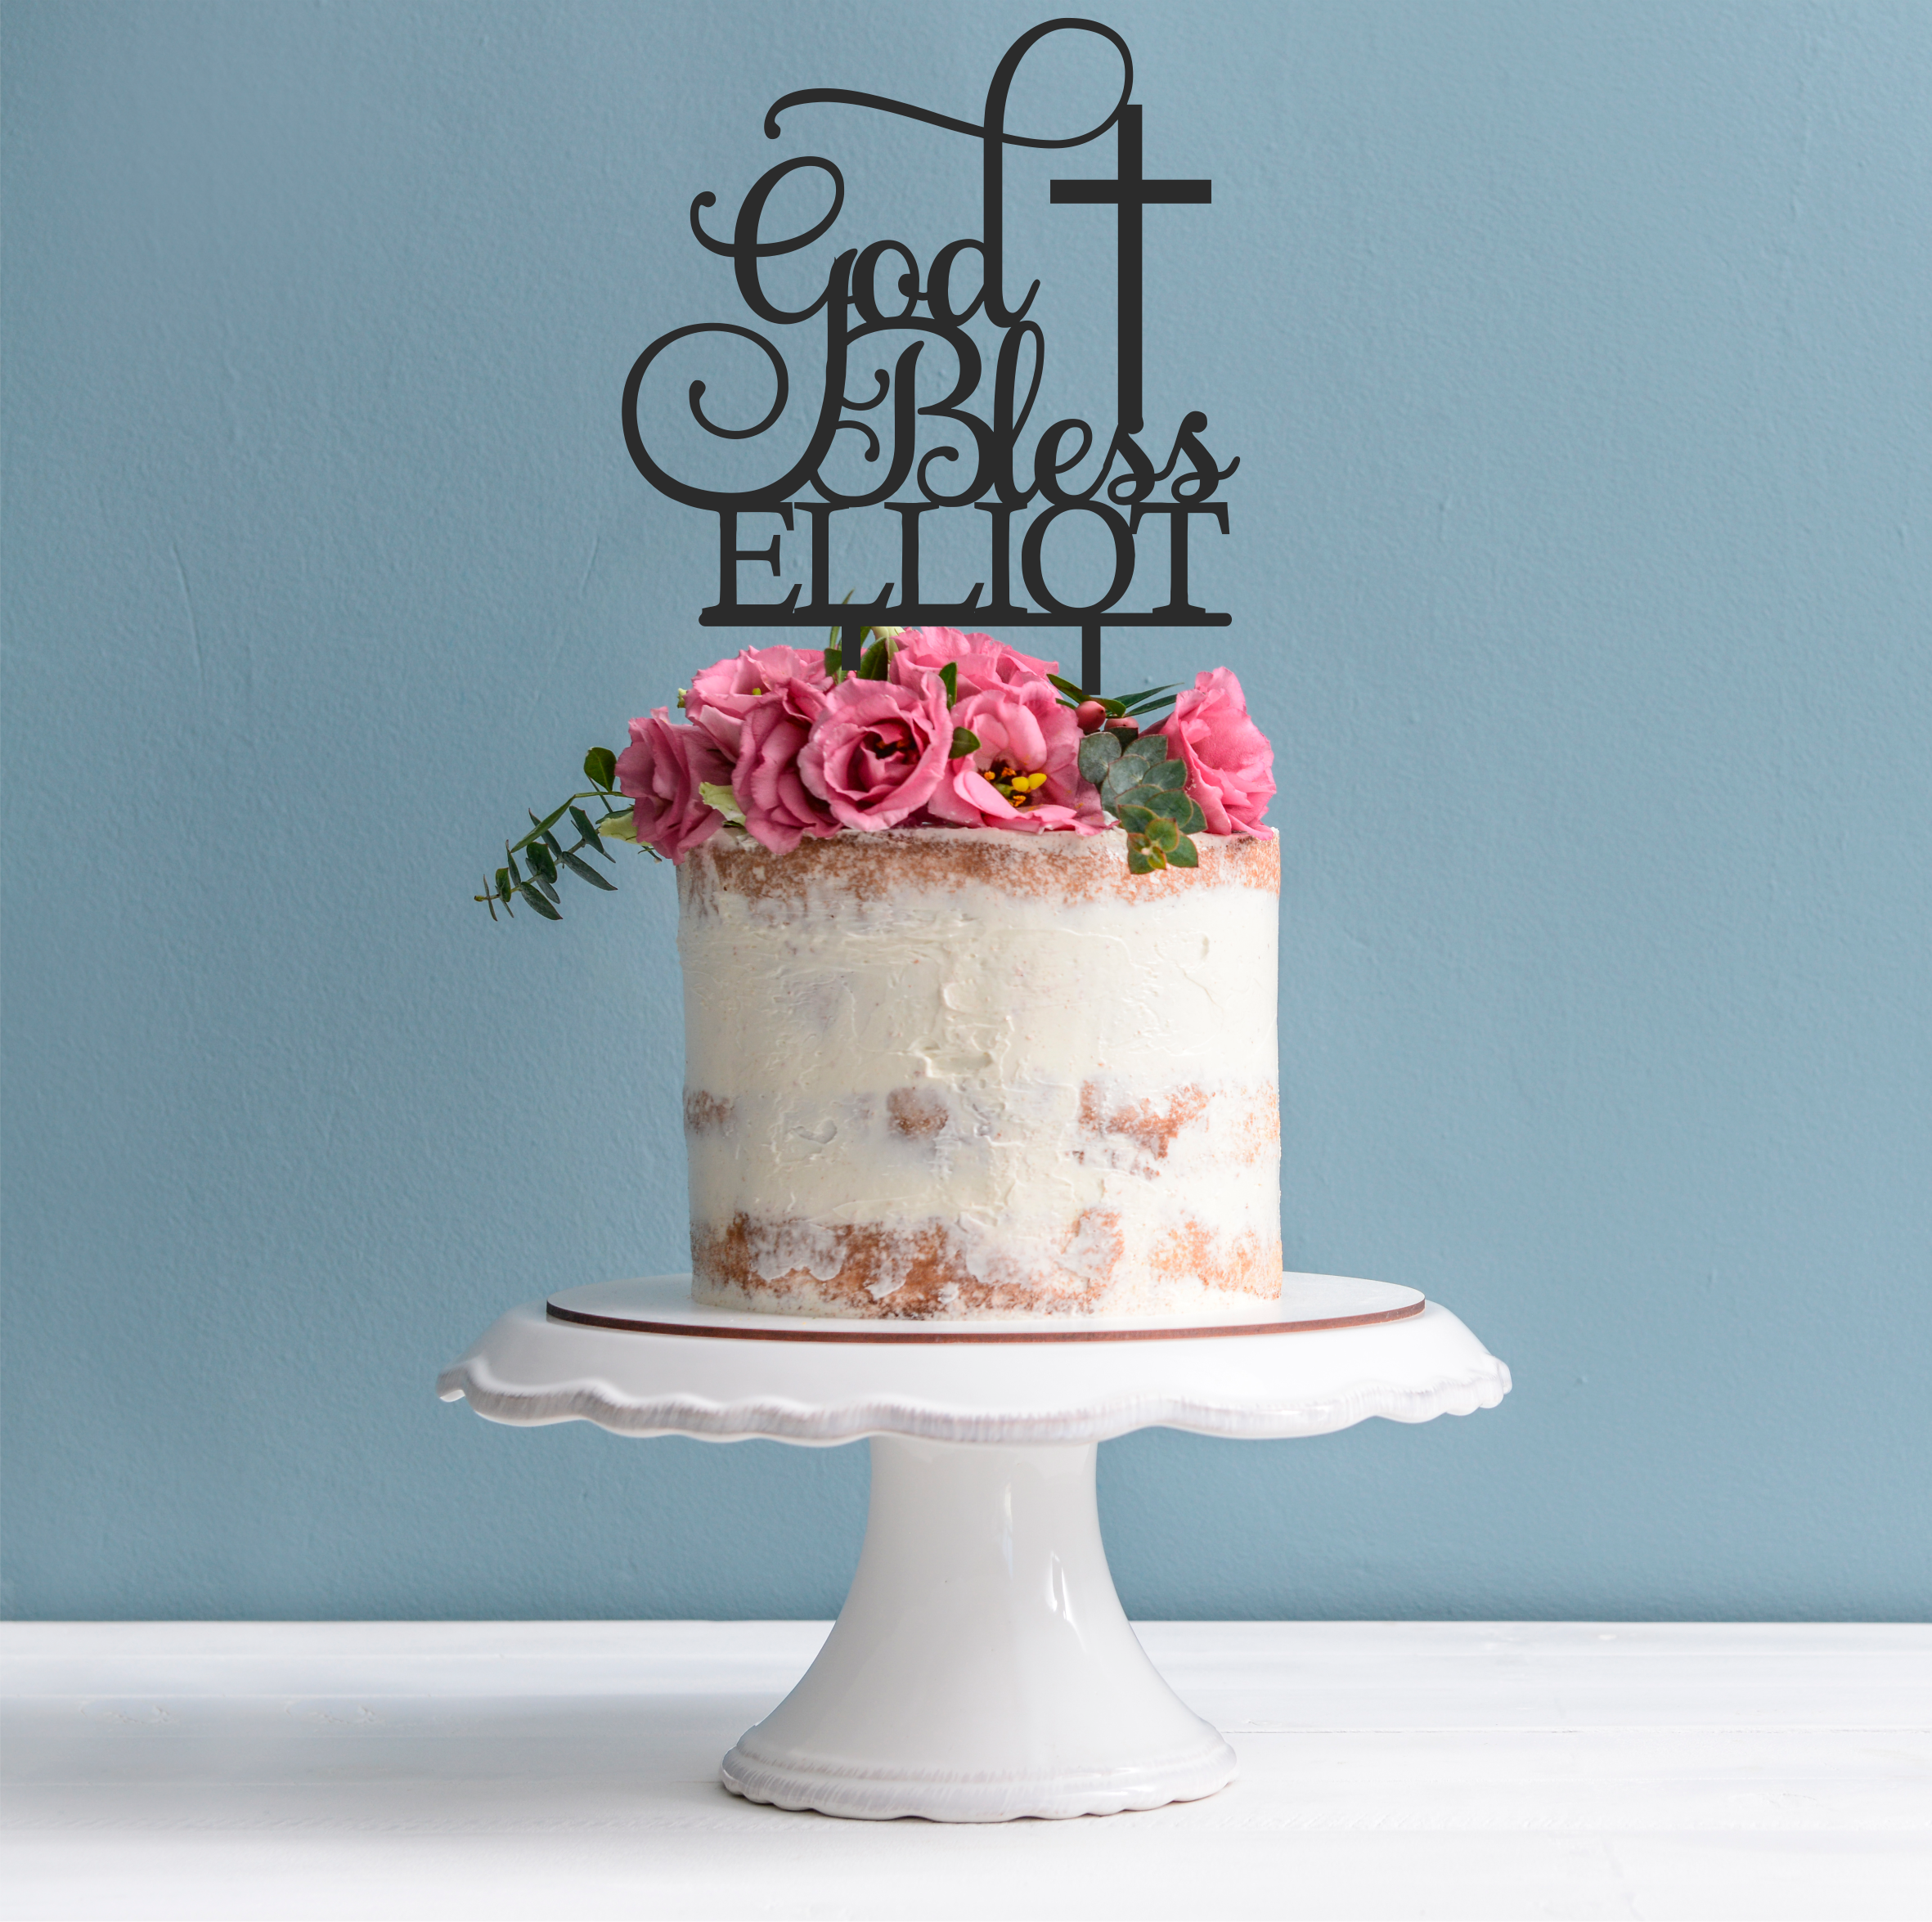 Personalised Cake Toppers, Personalised Wedding Cake Toppers, Glitter Happy Birthday  Cake Topper at Shepherd Delights, Berkshire, UK